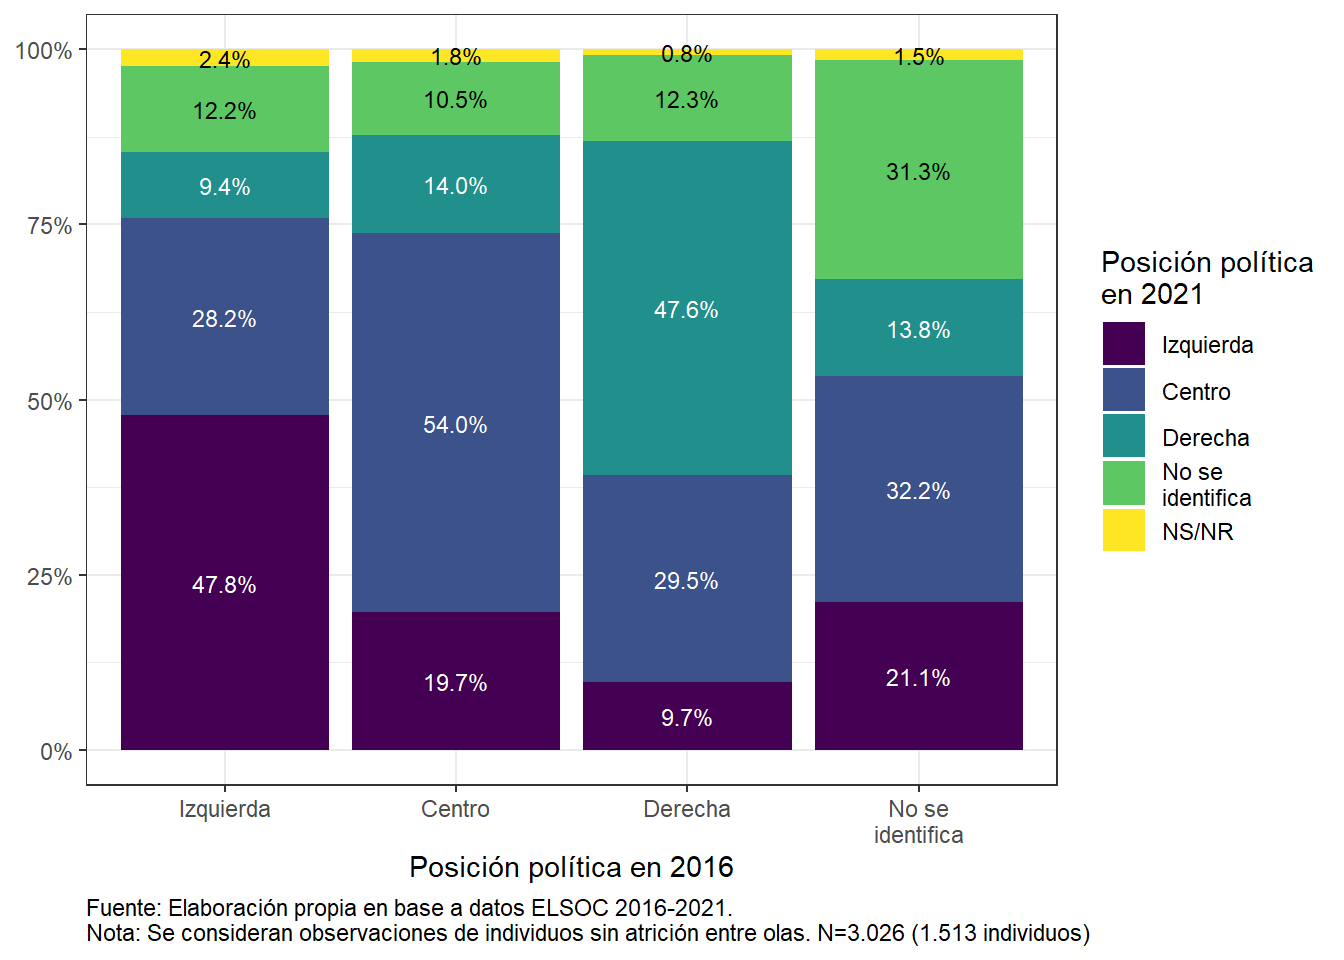 Posición política en 2021, según posición política en 2016